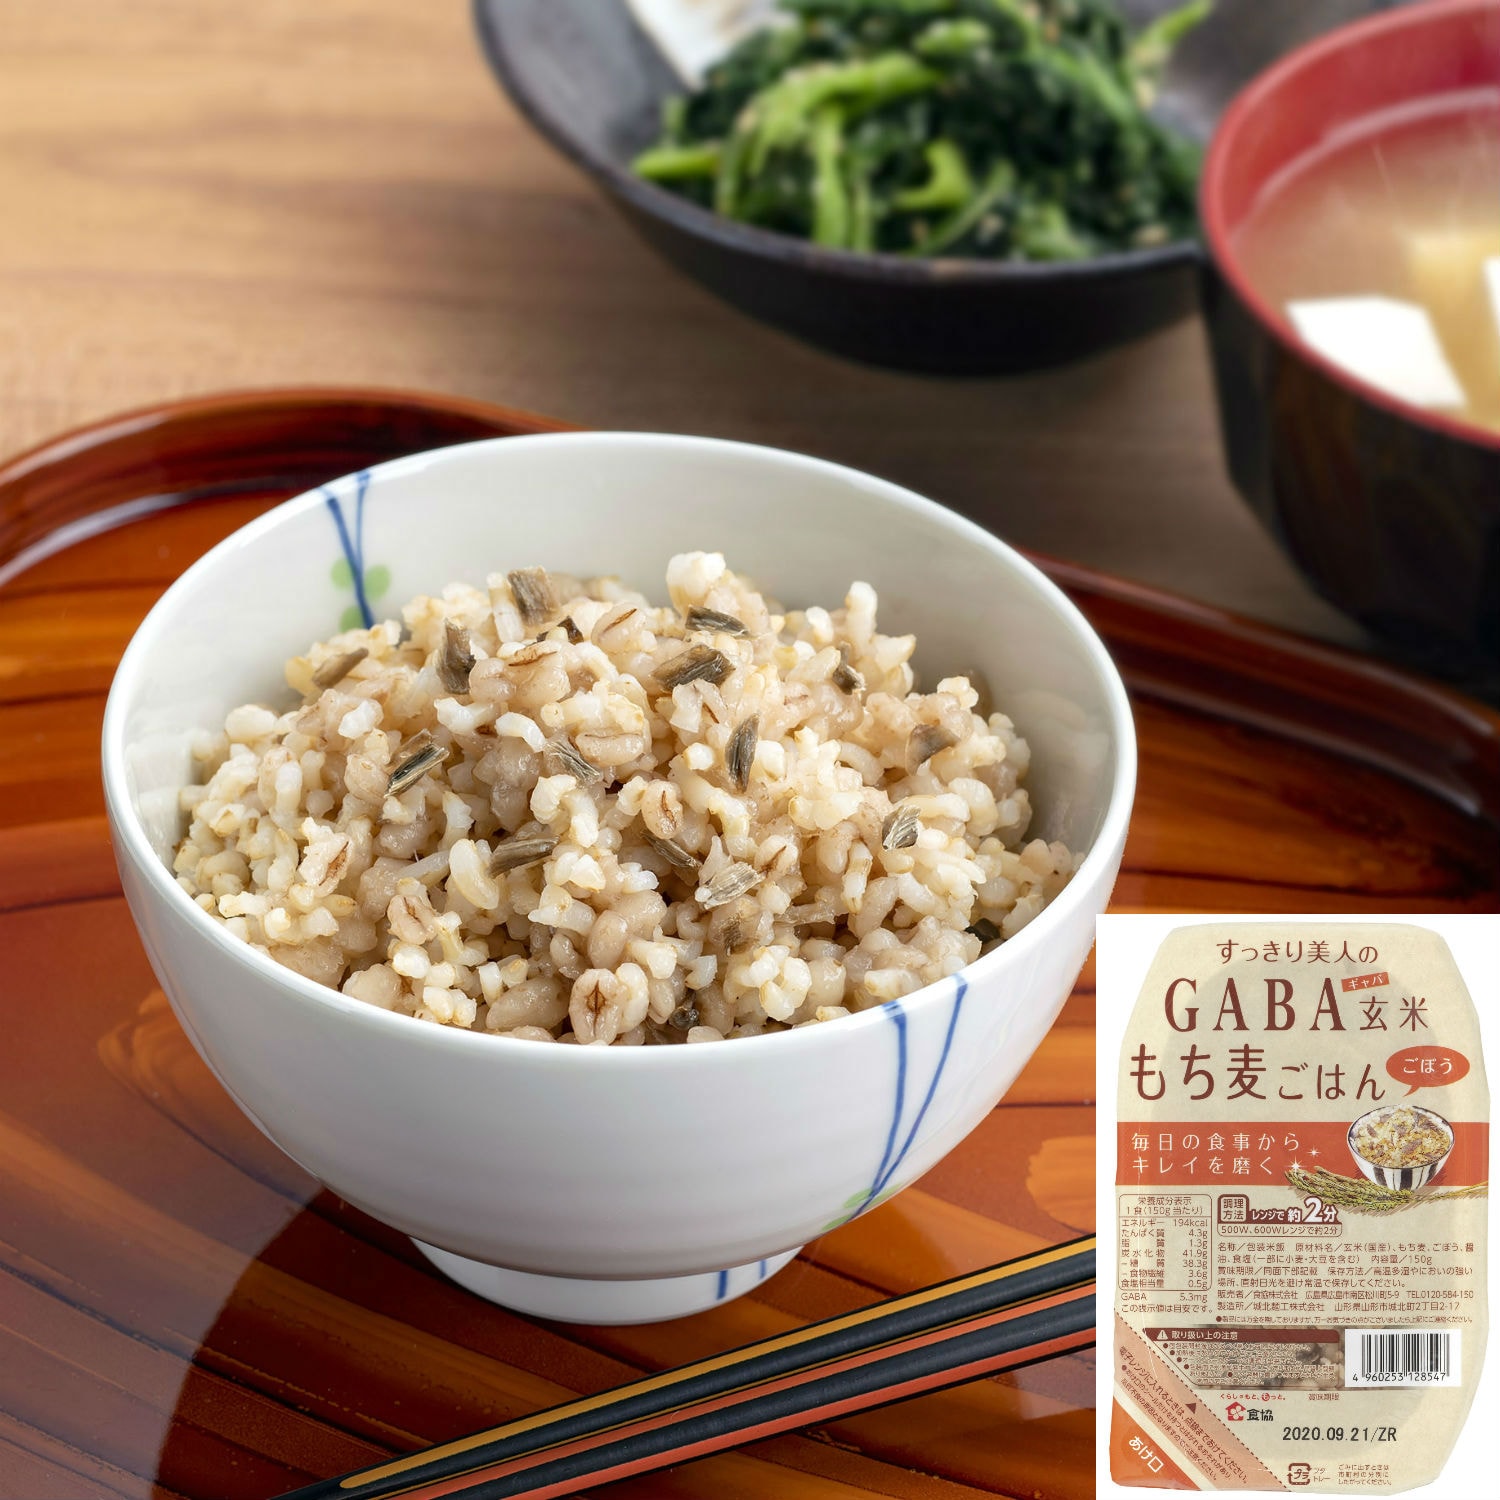 GABA玄米もち麦ごはん ごぼう 12食/24食の大画像